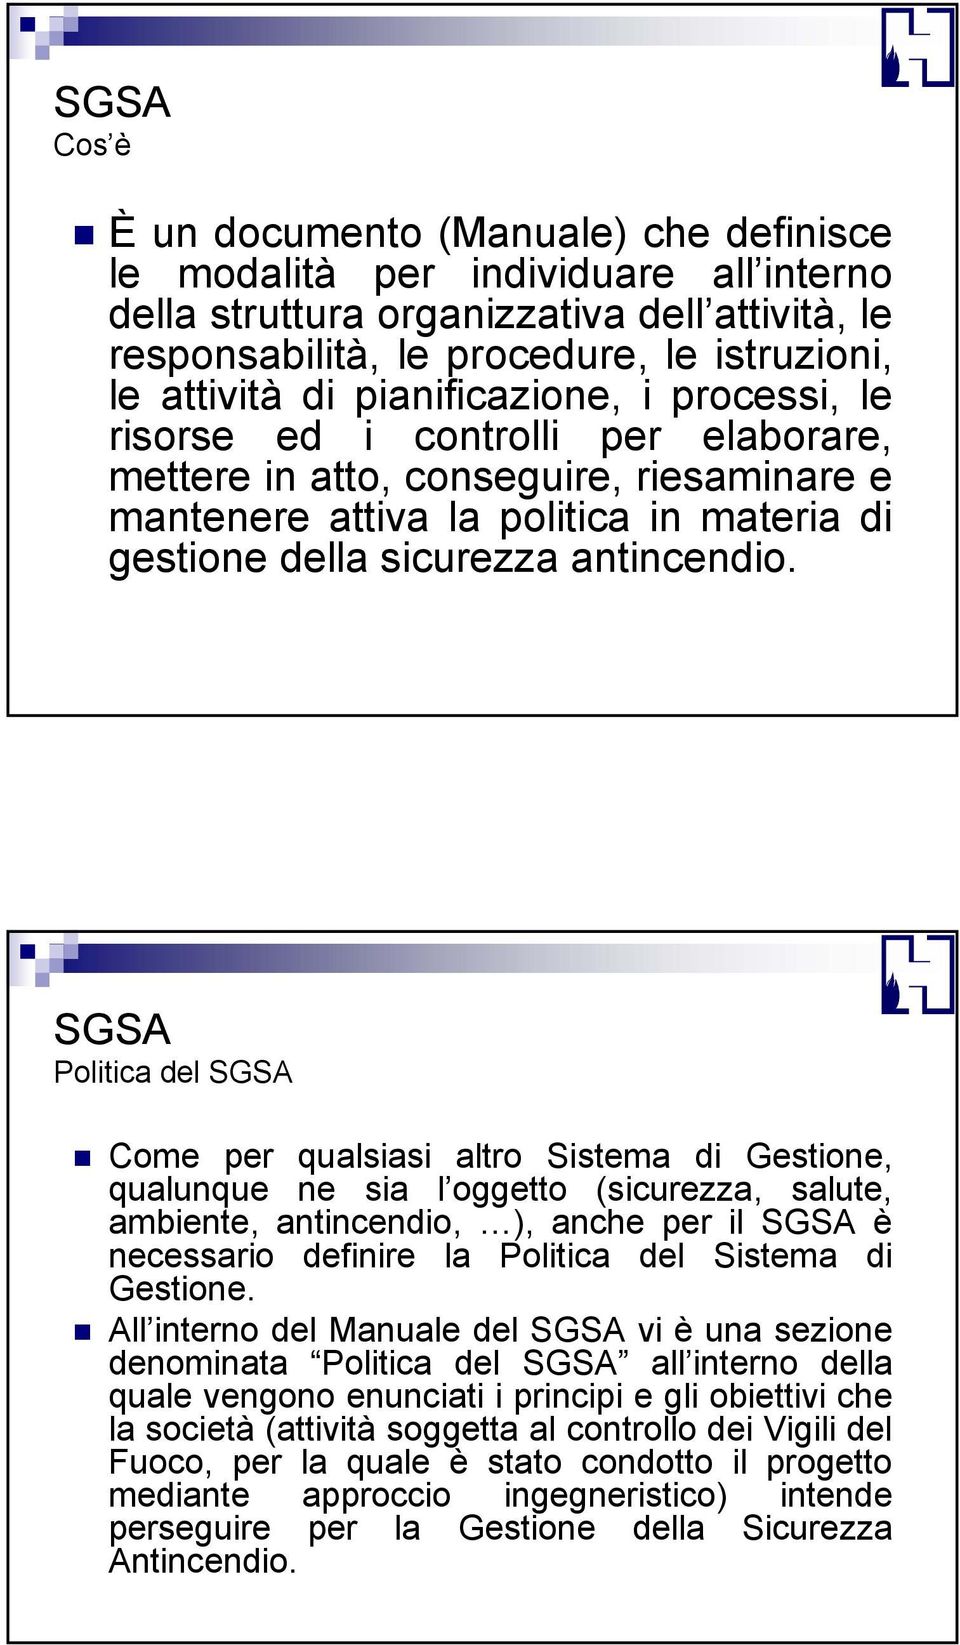 SGSA Politica del SGSA Come per qualsiasi altro Sistema di Gestione, qualunque ne sia l oggetto (sicurezza, salute, ambiente, antincendio, ), anche per il SGSA è necessario definire la Politica del